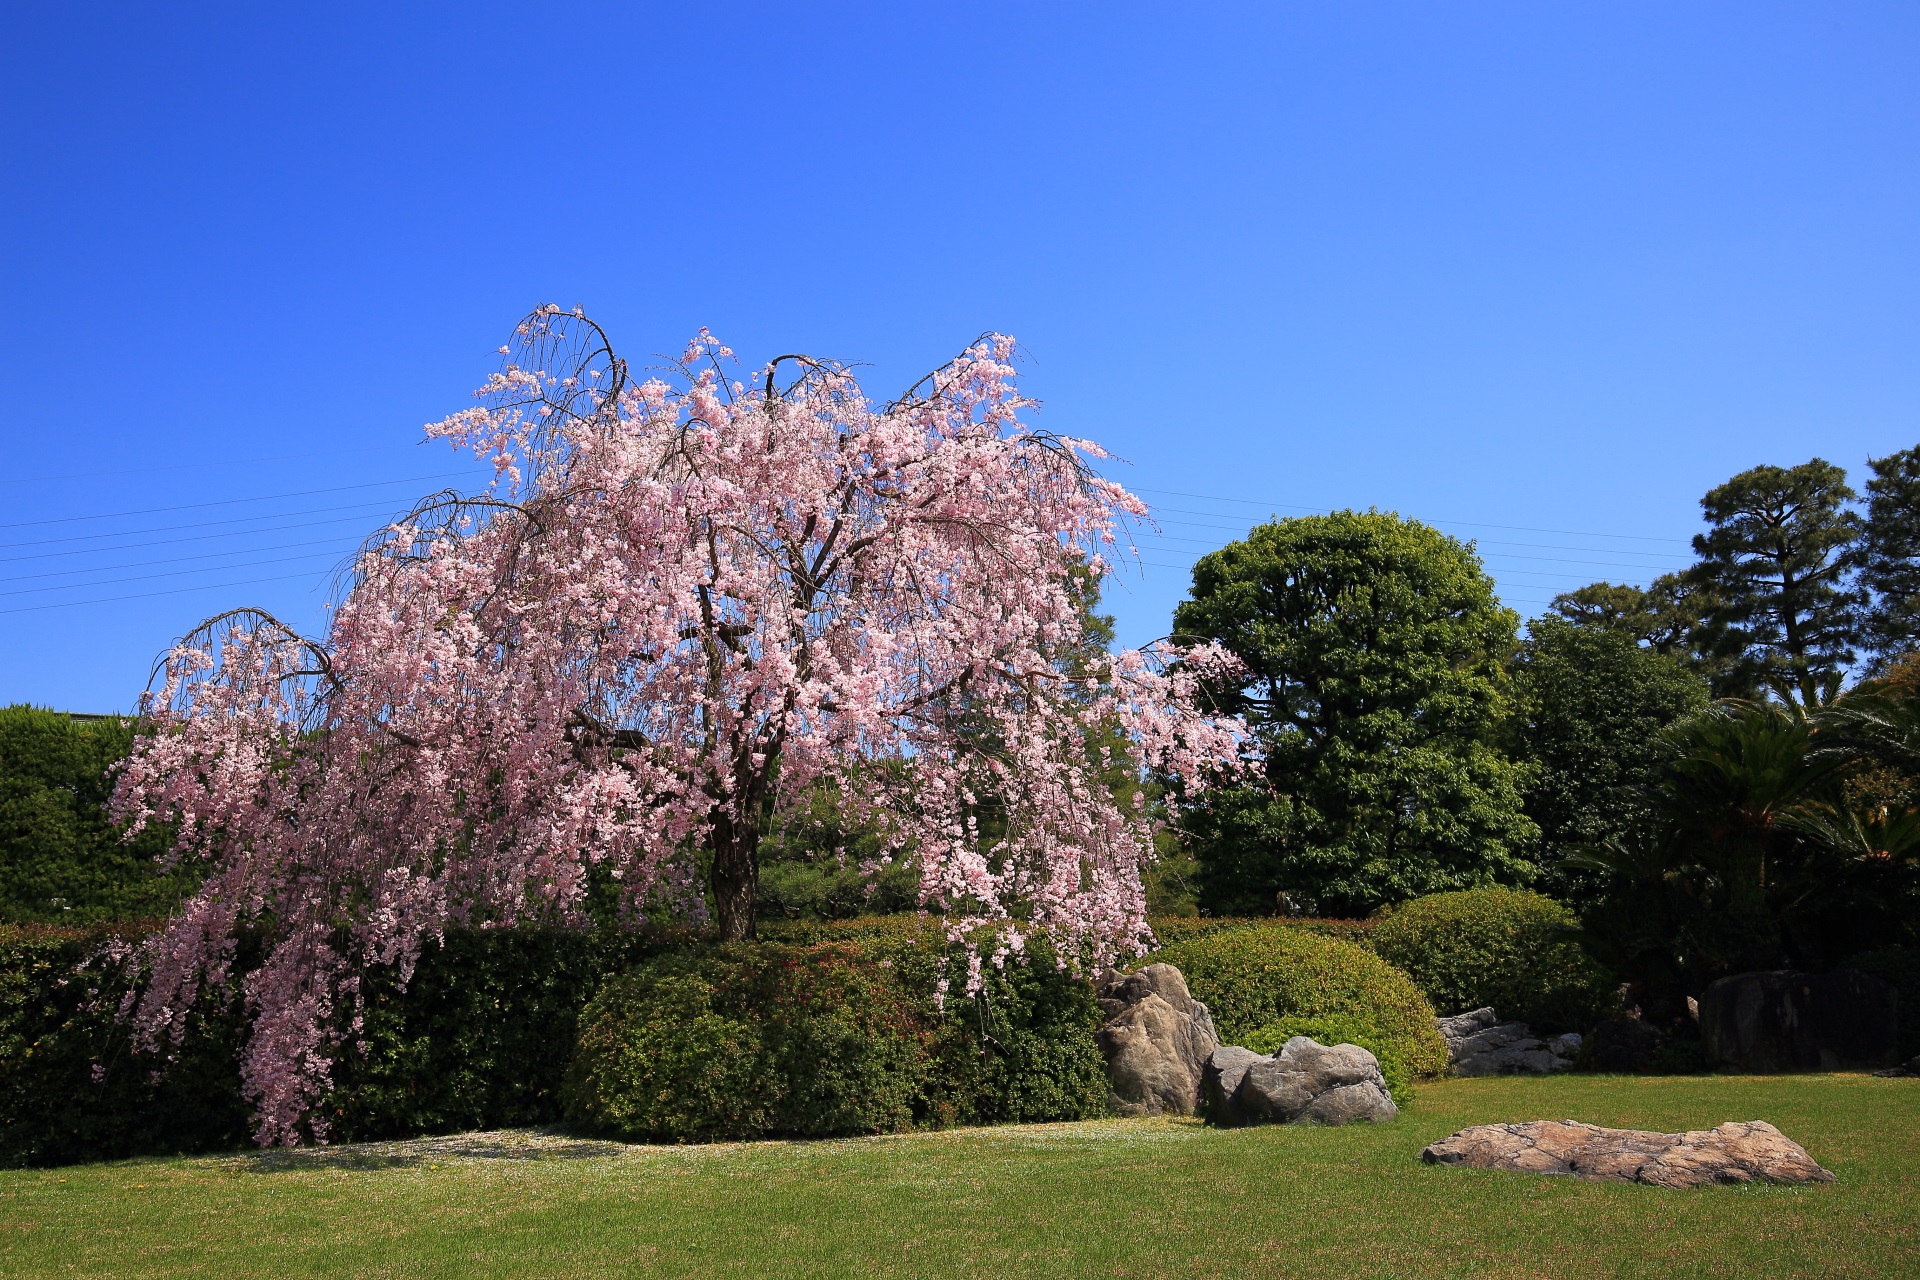 爽快な青空に映える上品な庭園に佇む立派な桜